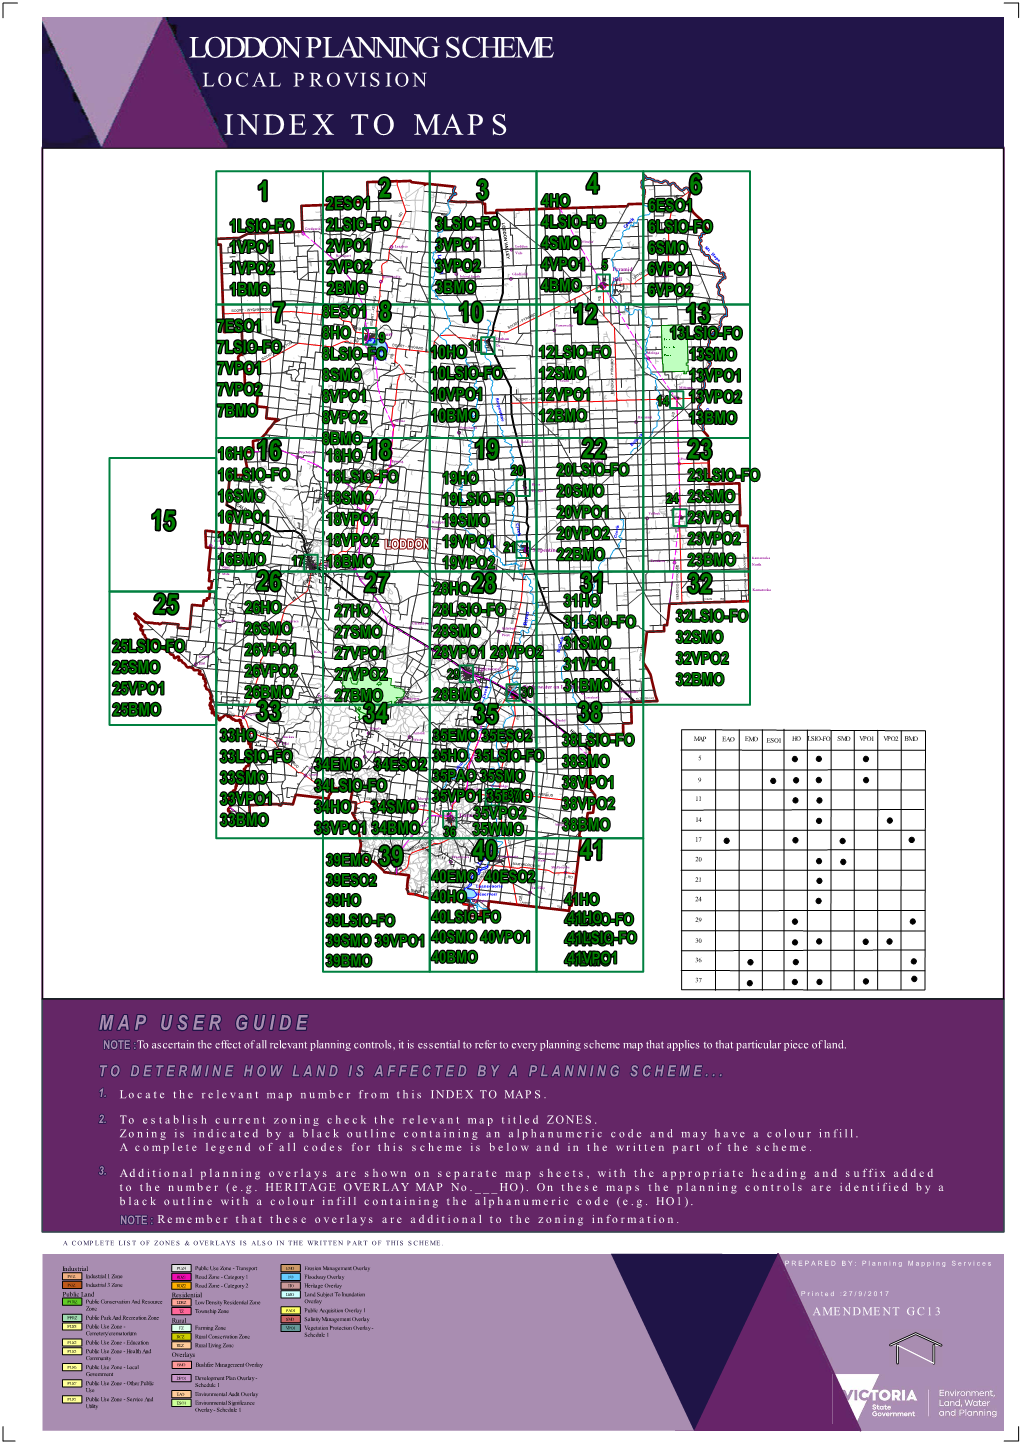 Loddon Planning Scheme Indextomaps